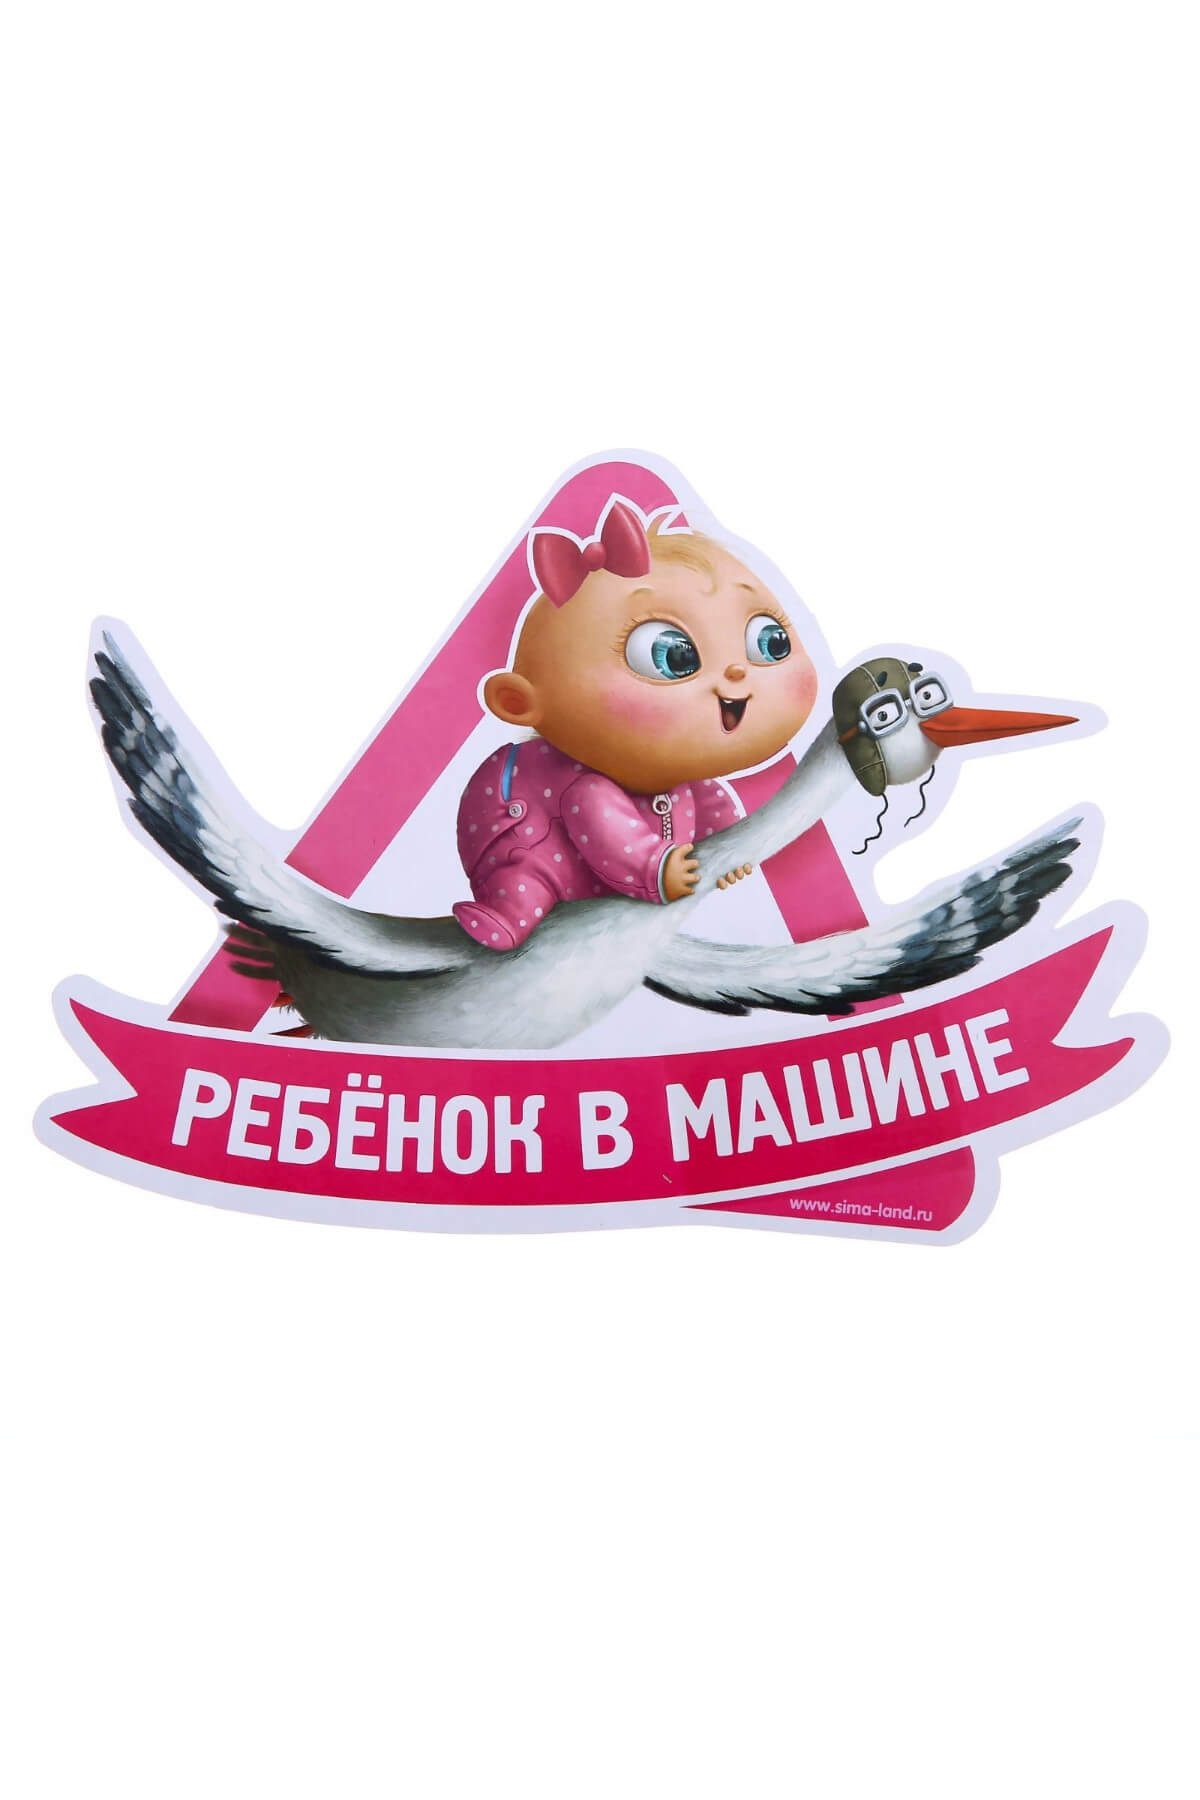 Наклейка на автомобиль Ребенок в машине Happy-Moms.ru